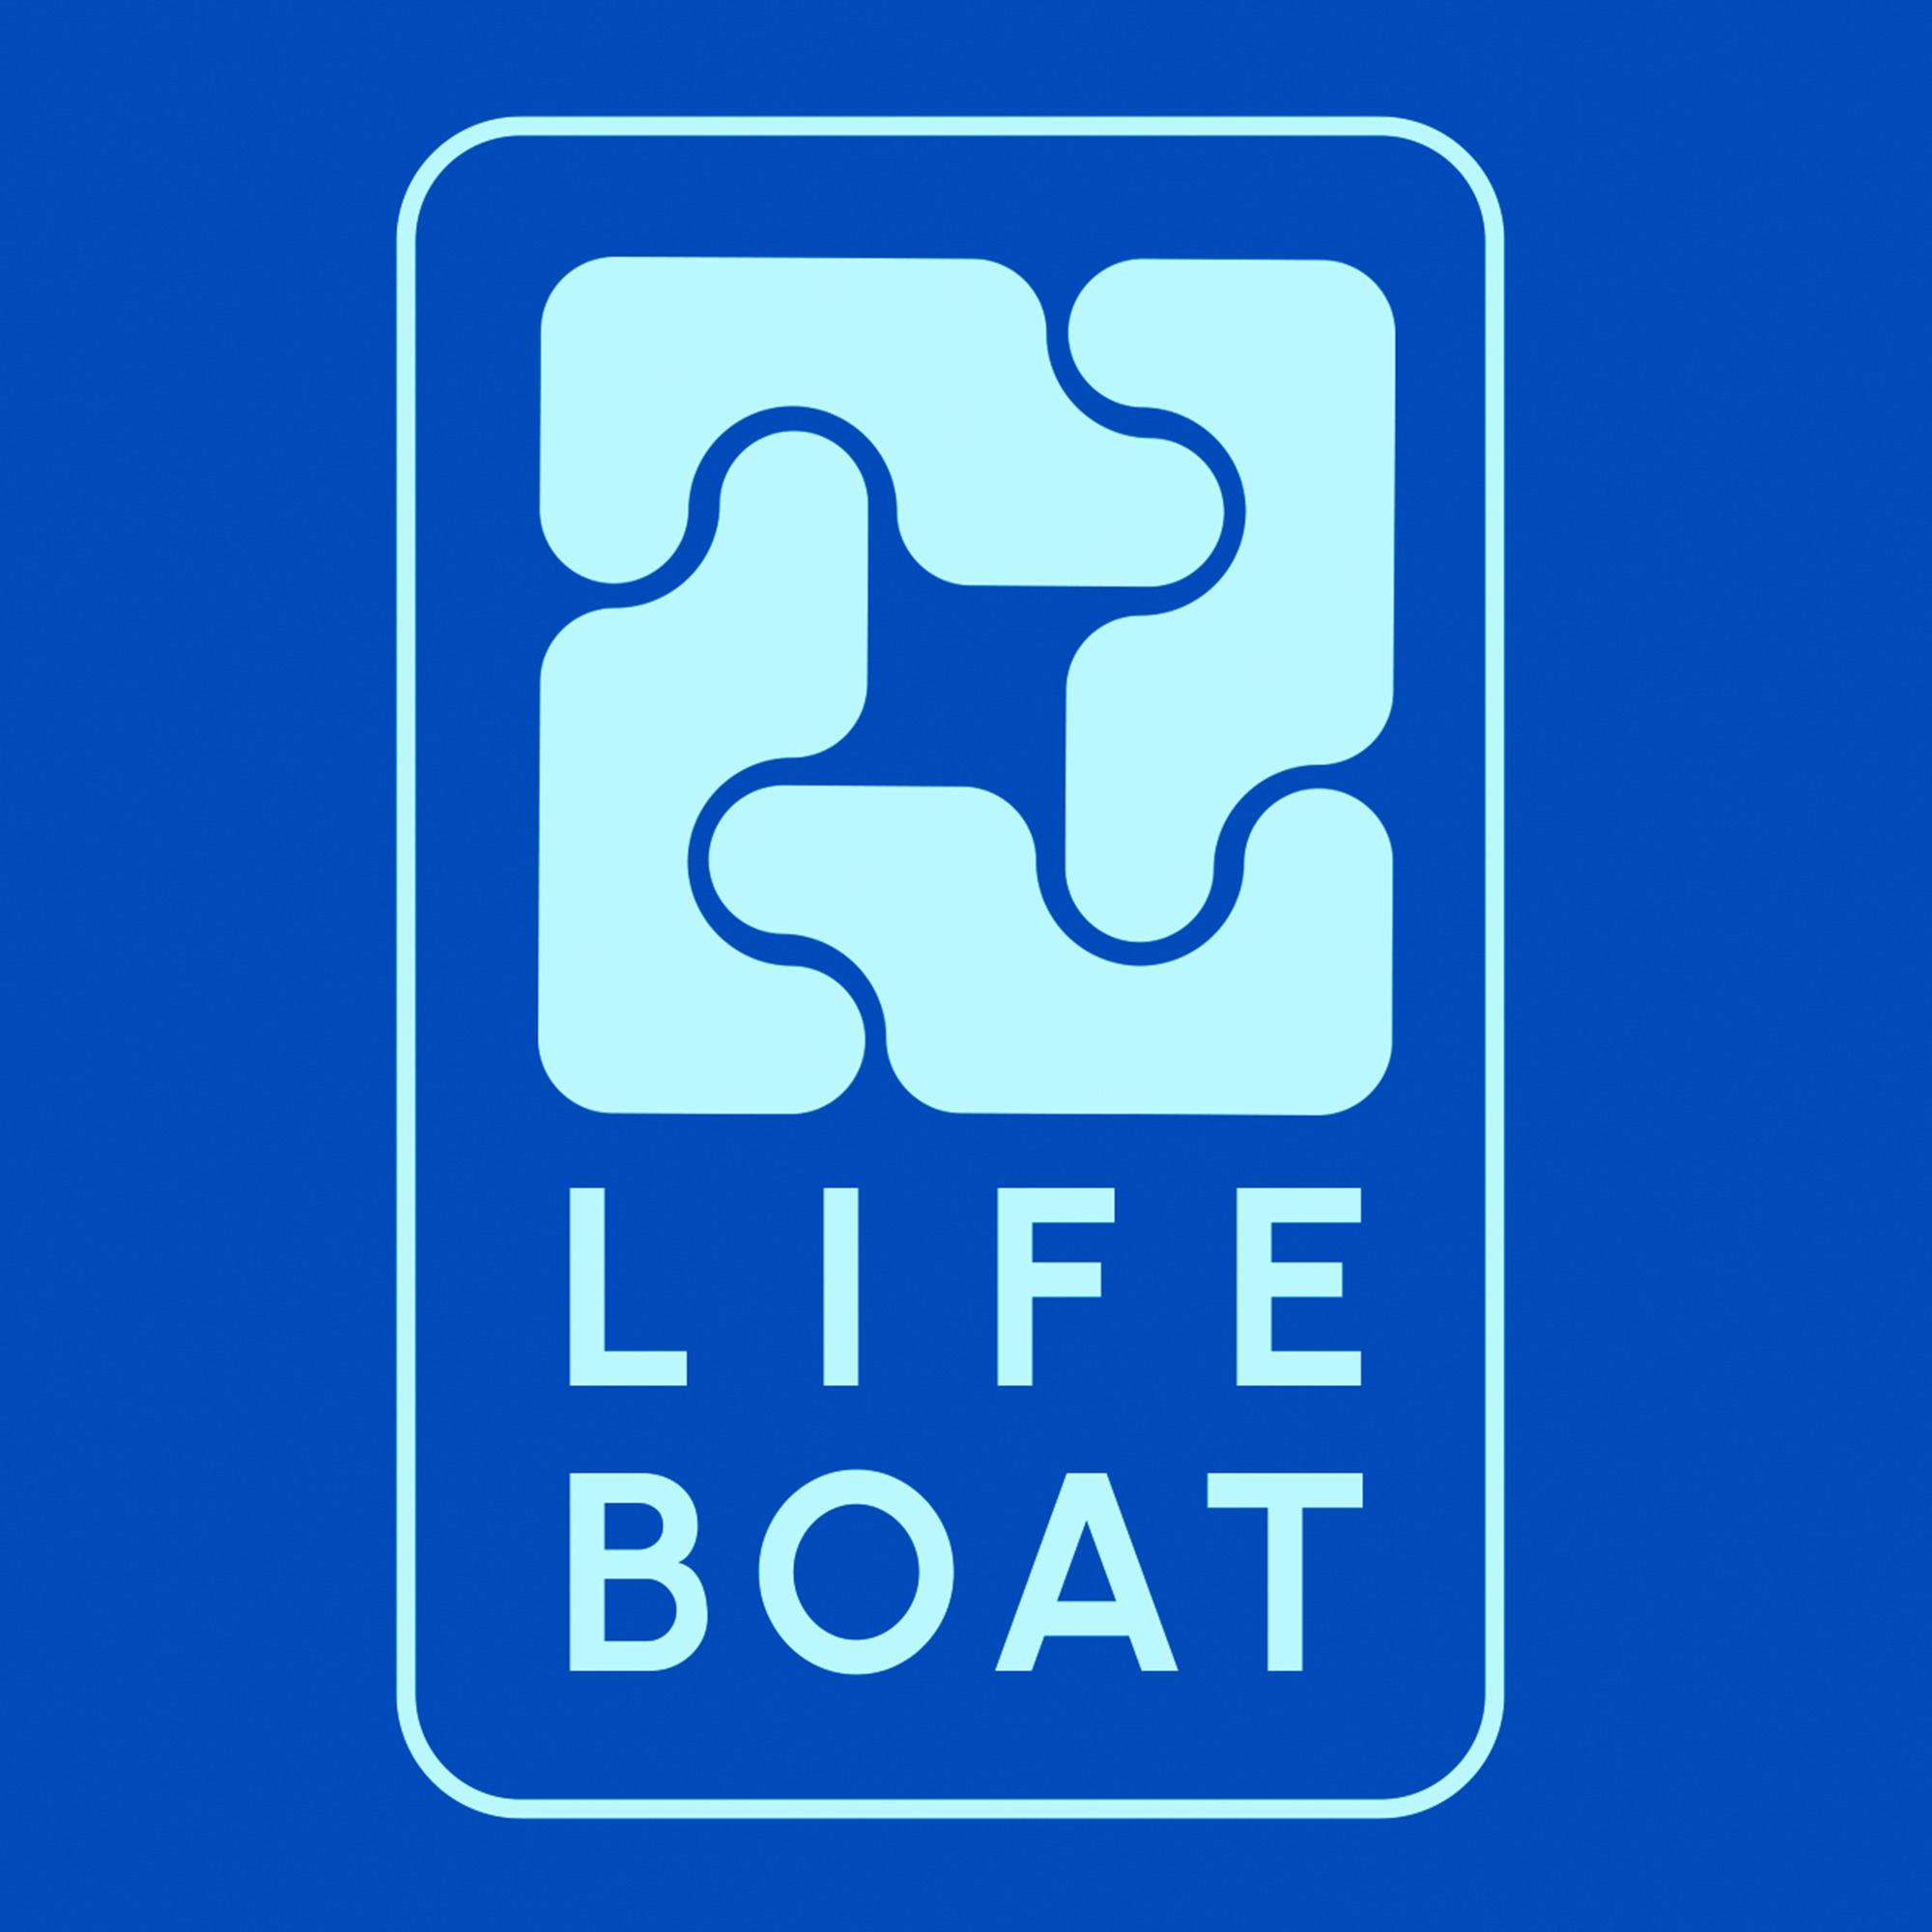 Life Boat